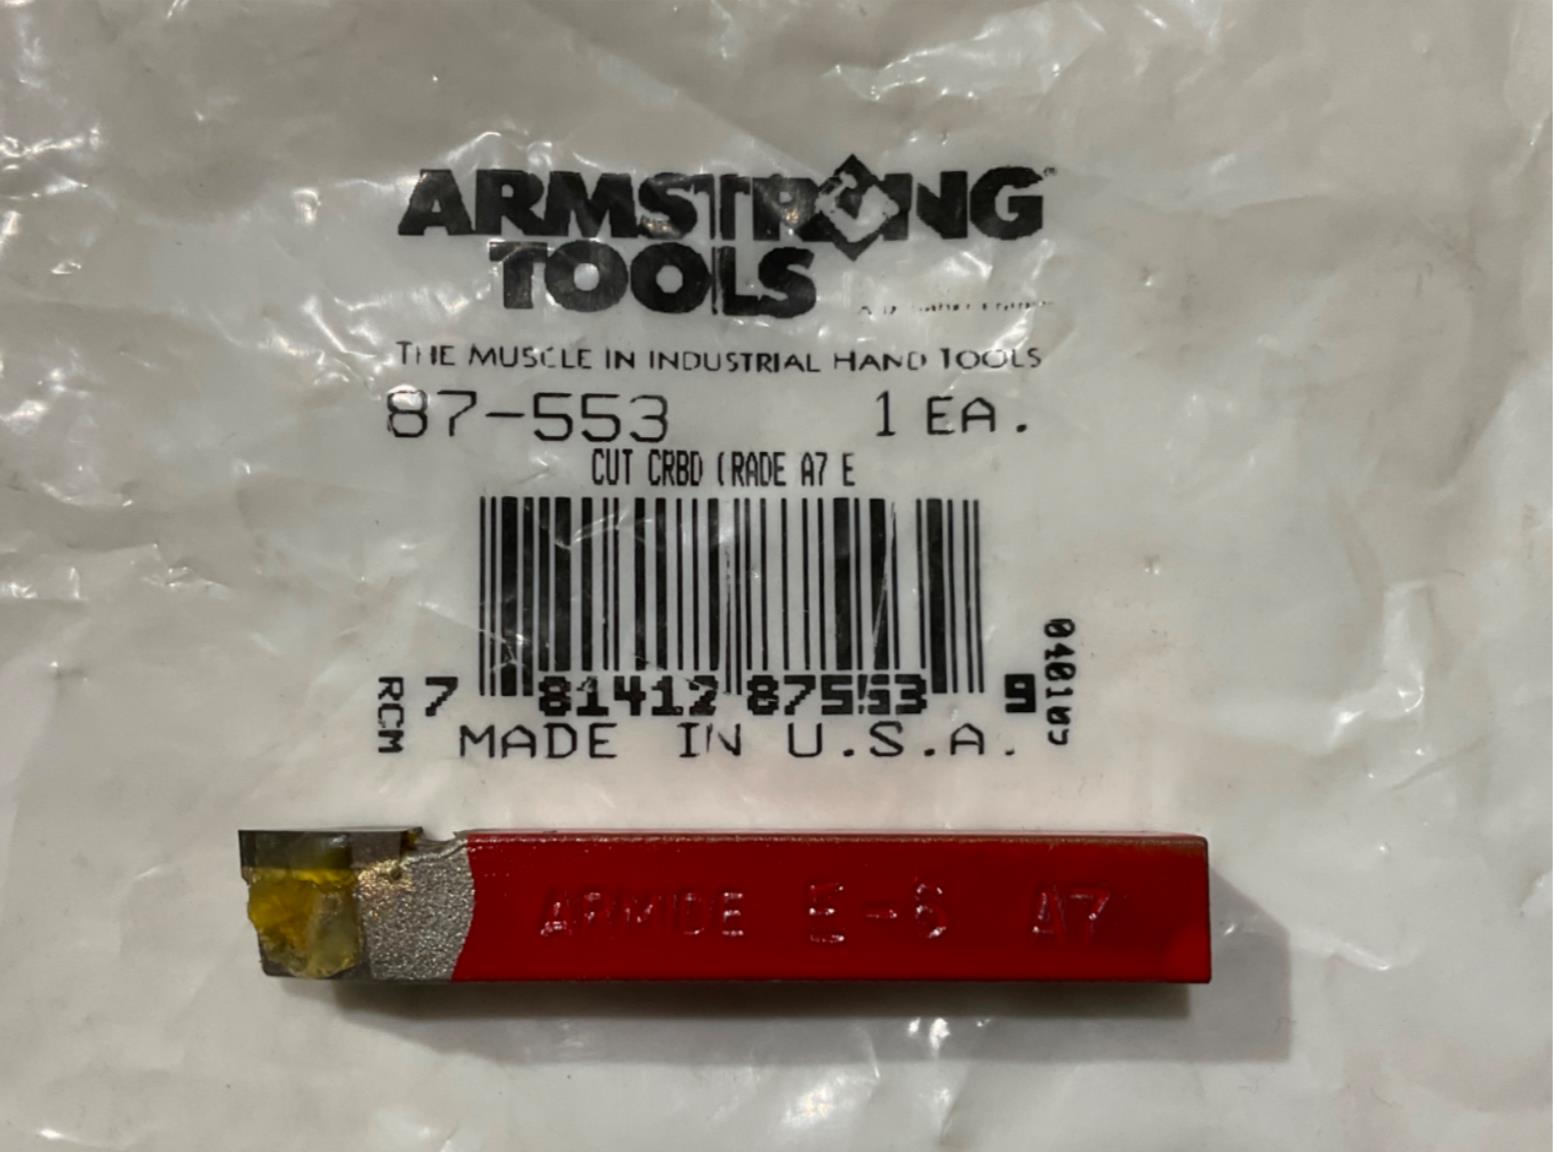 Armstrong 87-553 Cut Carbide Grade A7 E6 USA